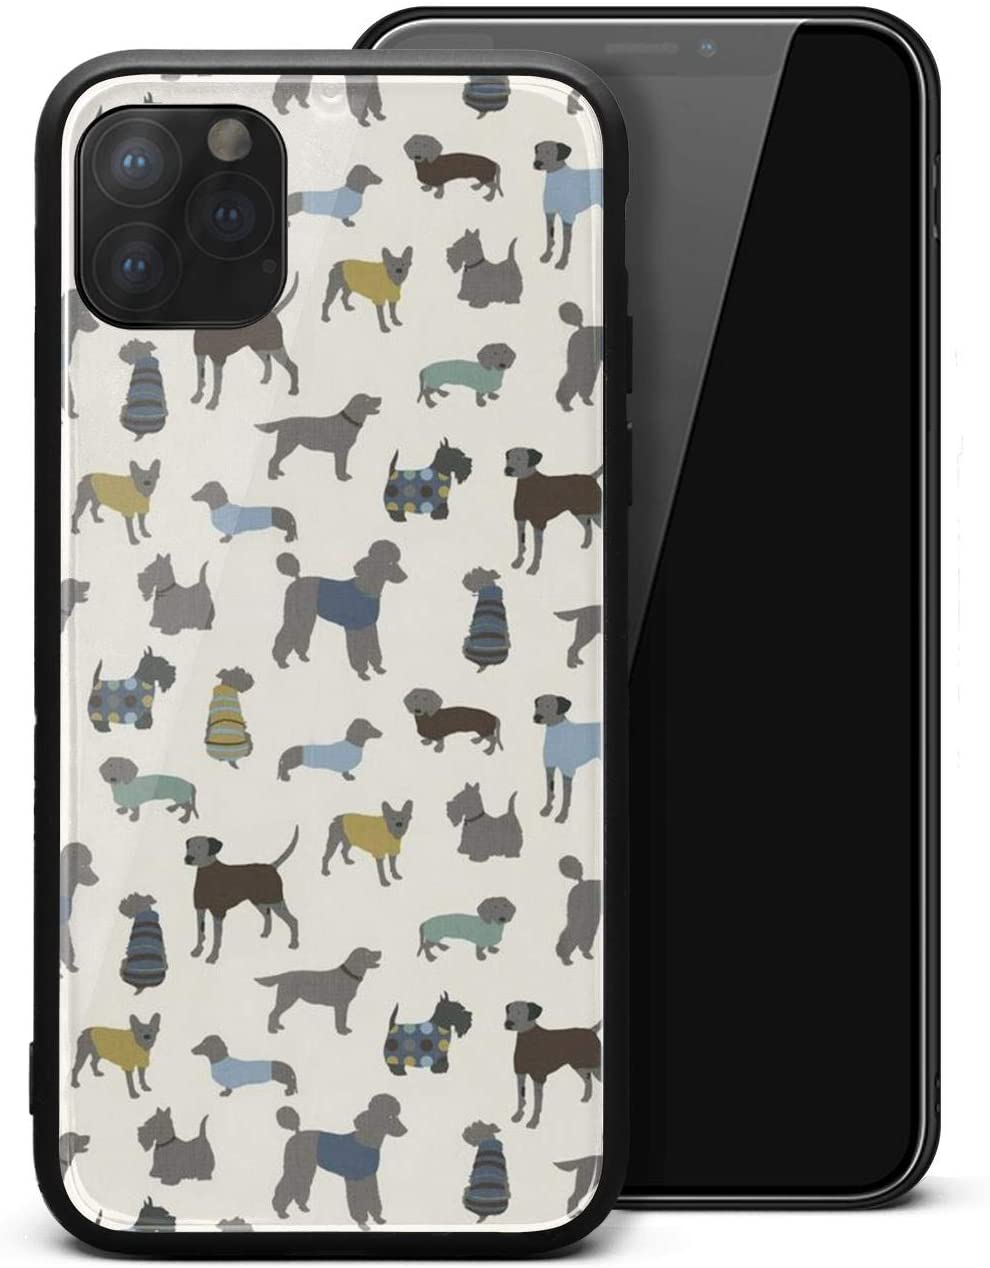 Boston Terrier , HD Wallpaper & Backgrounds